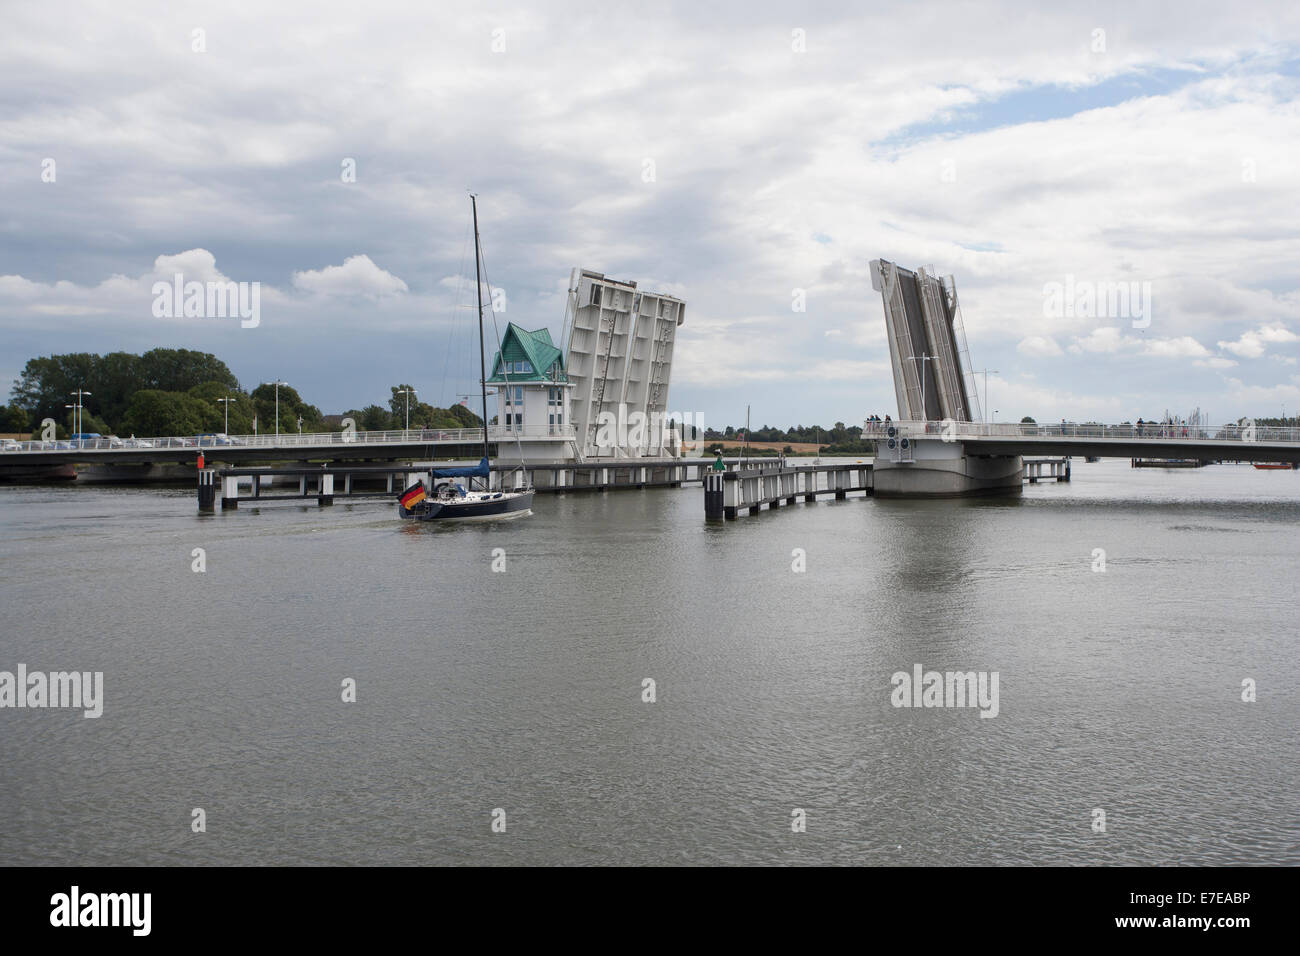 bascule bridge, b203, kappeln, schlei, schleswig-flensburg district, schleswig-holstein, germany Stock Photo